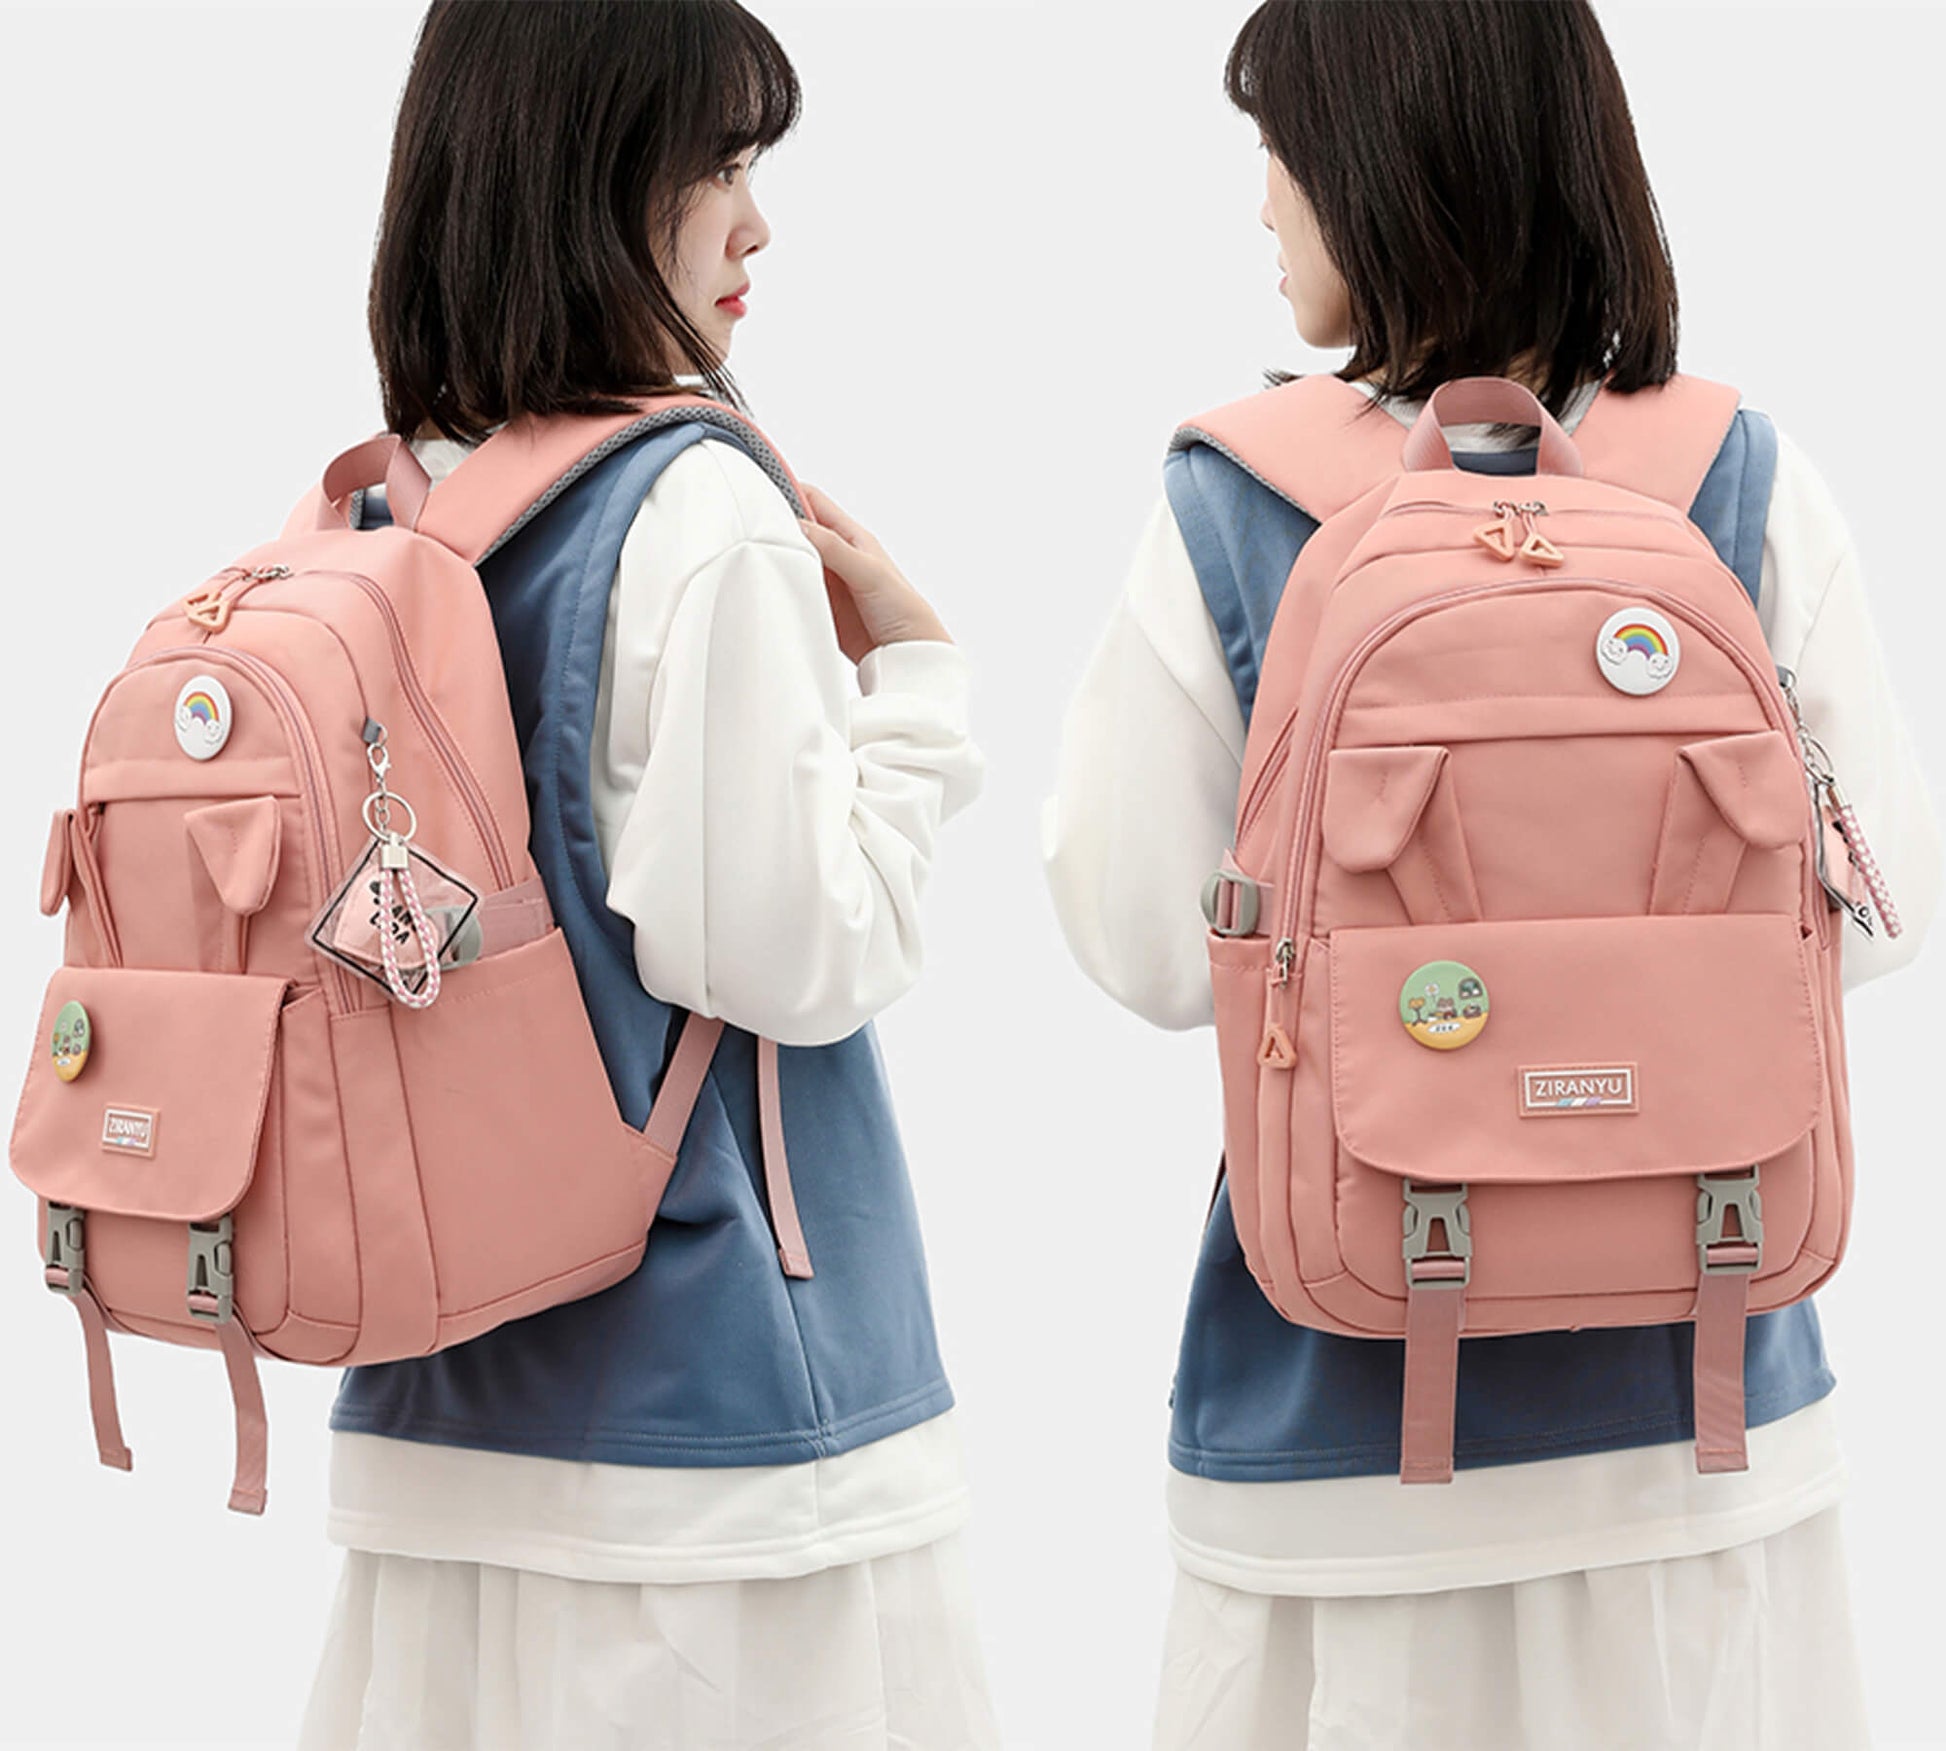 Tik Tok Cool Backpacks For Boy Girl School Bags Rucksack Teenagers